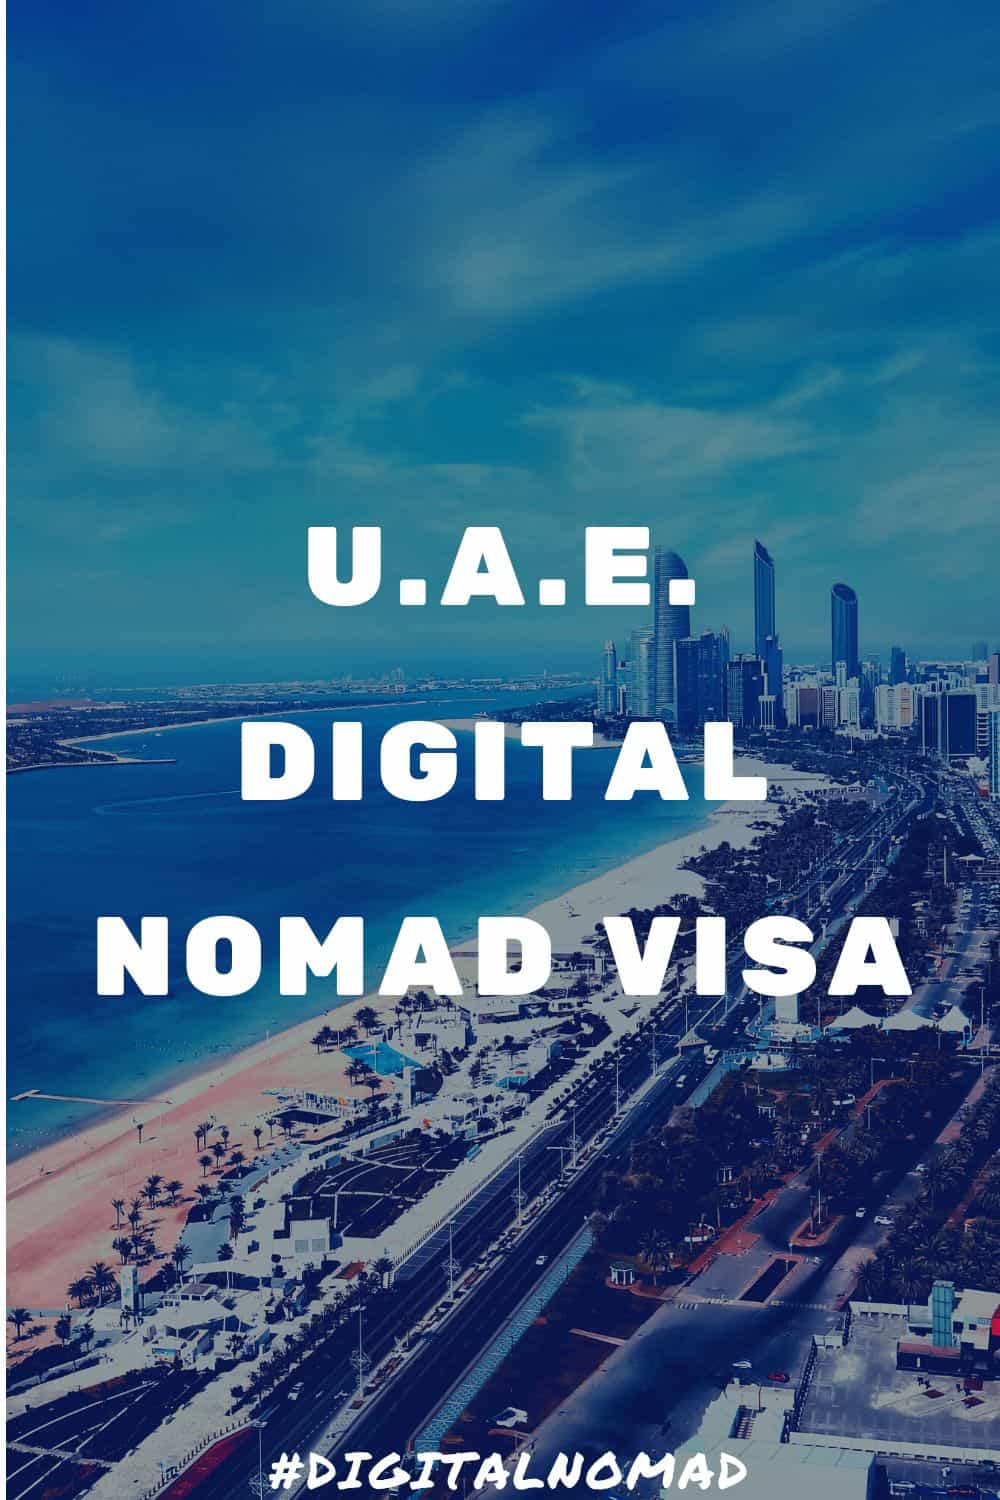 UAE Digital Nomad Visa